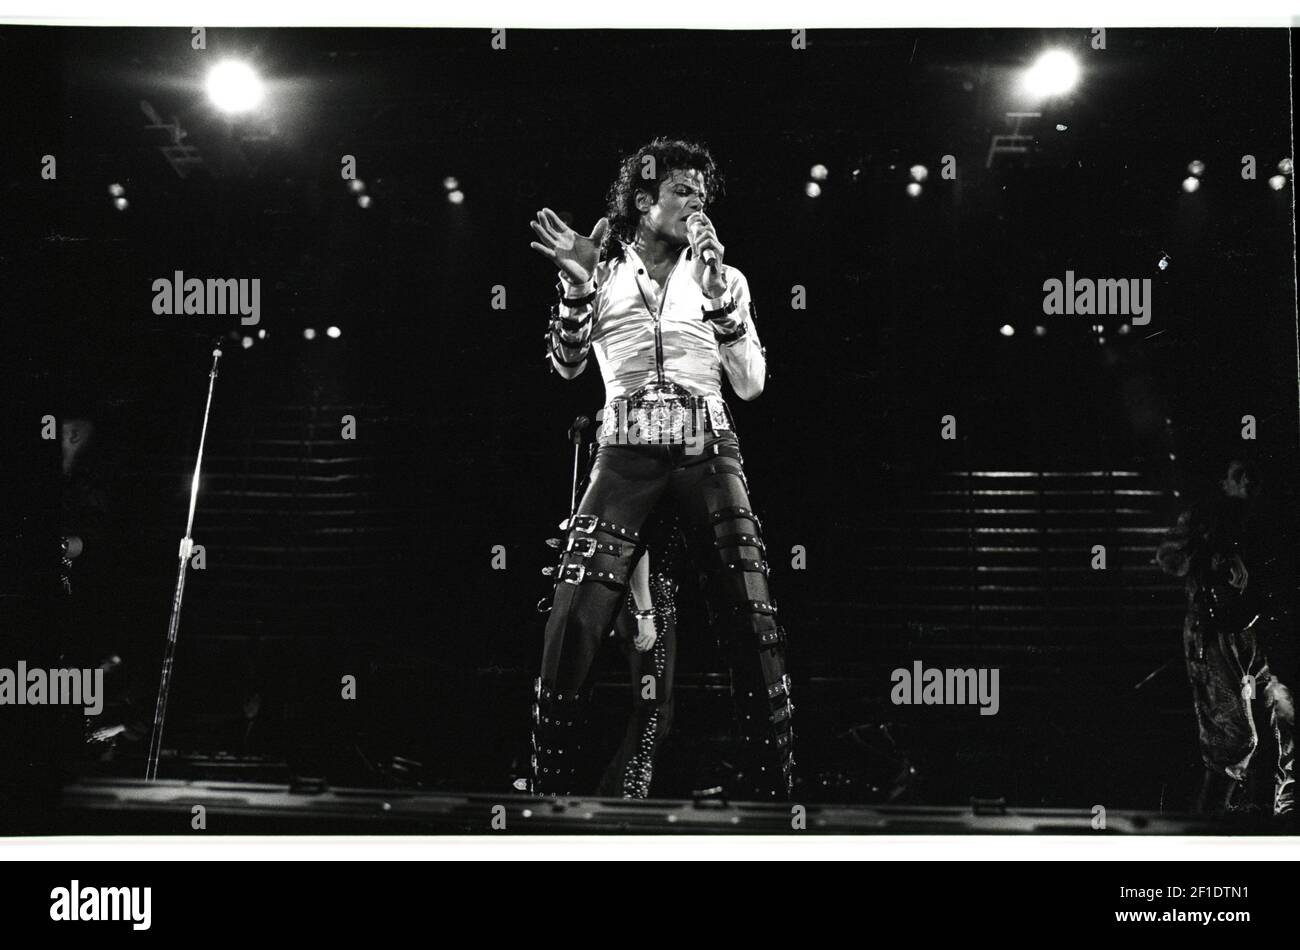 Marzo de 18 1988; Indianápolis, IN, EE.UU.; Michael Jackson actúa en un concierto de Market Square Arena el 18 1988 de marzo. Fue el primero de dos conciertos de MSA vendidos durante su gira por el mundo malo. Crédito obligatorio: Mike Fender / The Indianapolis Star via USA TODAY NETWORK/Sipa USA Foto de stock